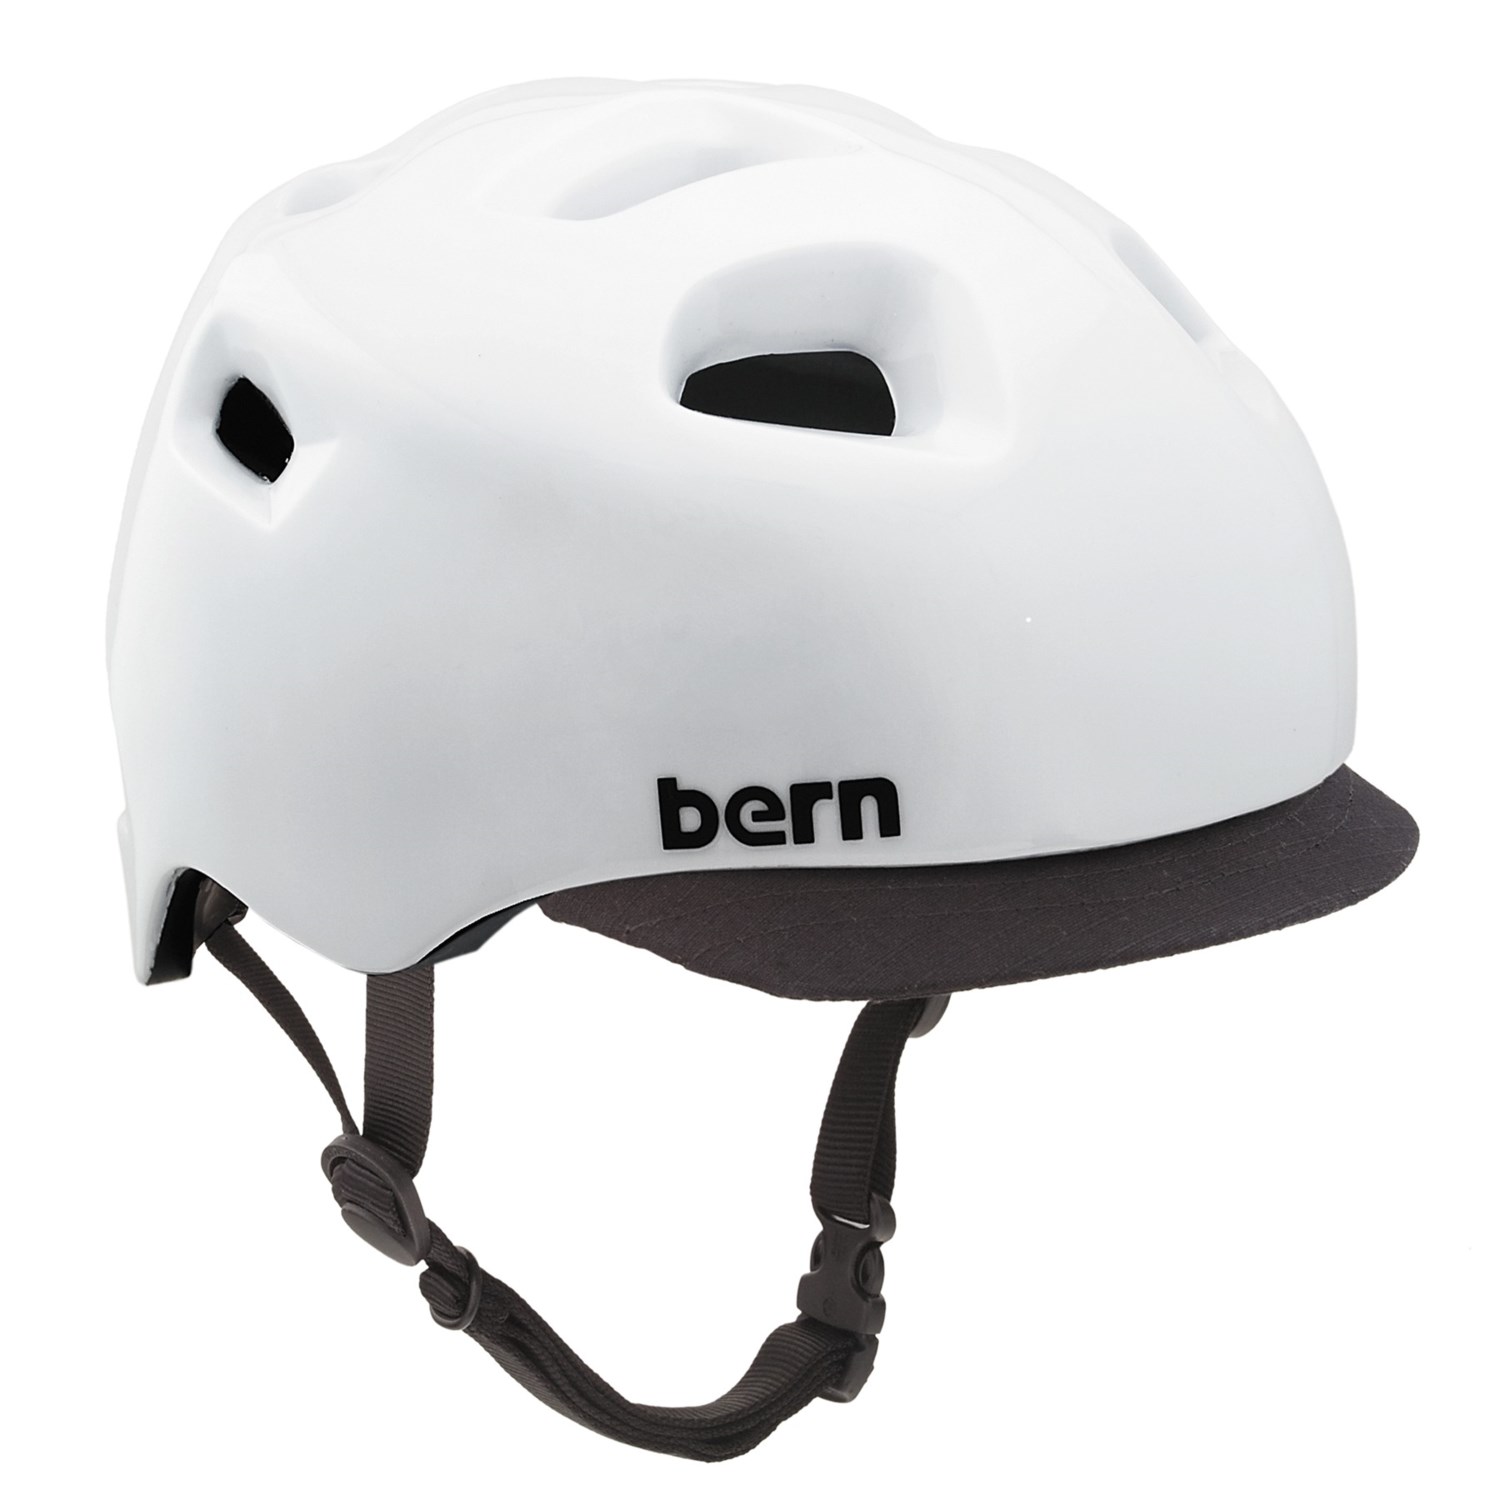 Bern Bicycle Helmet